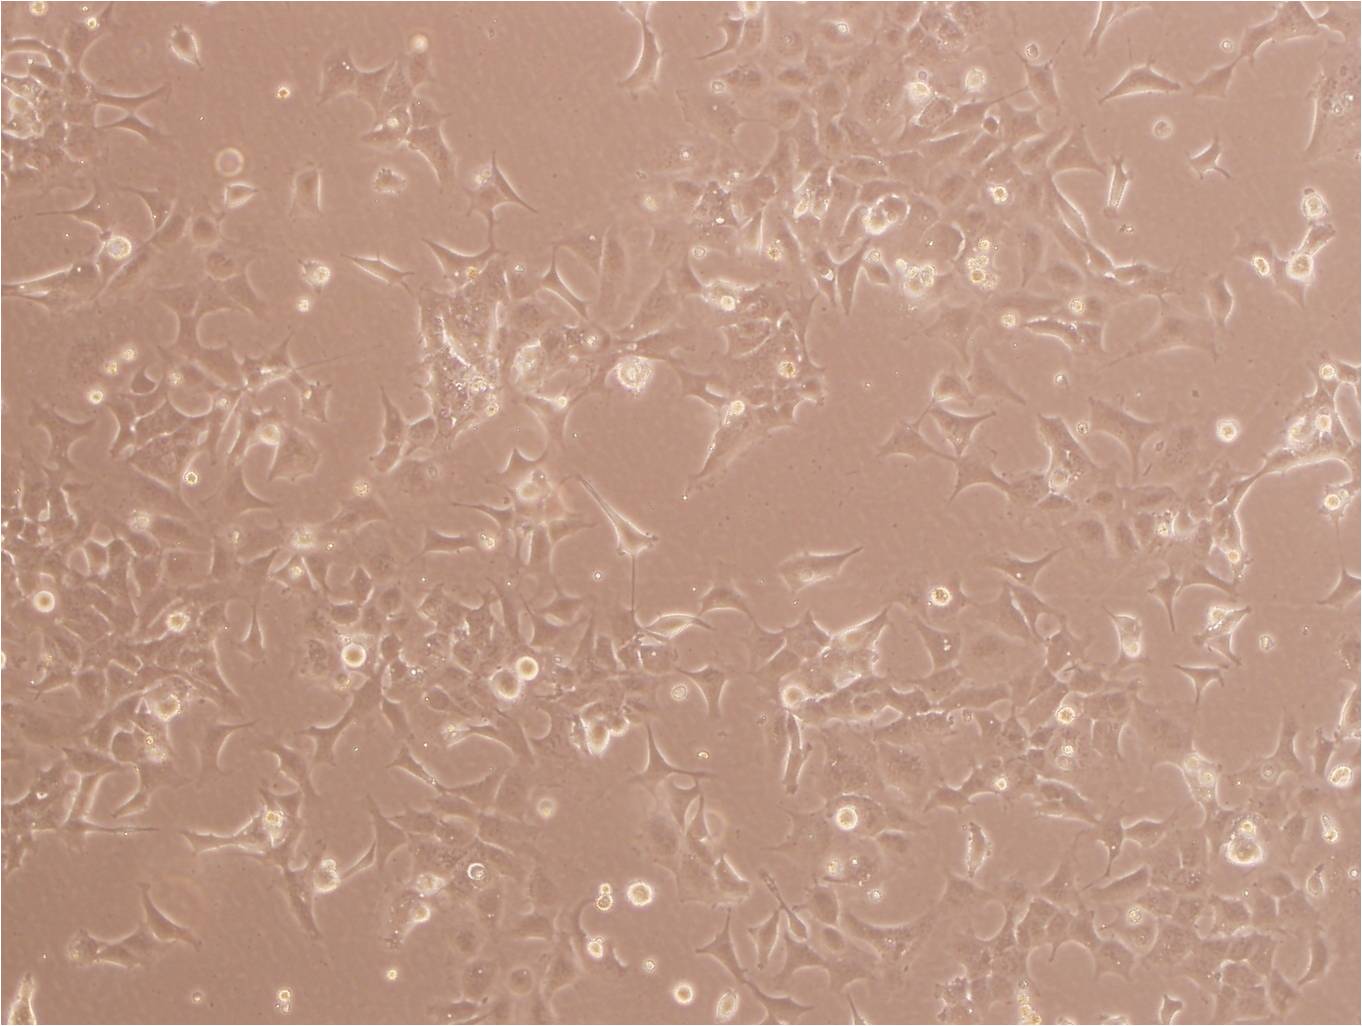 LA-N-1 Cells(赠送Str鉴定报告)|人神经母细胞瘤细胞